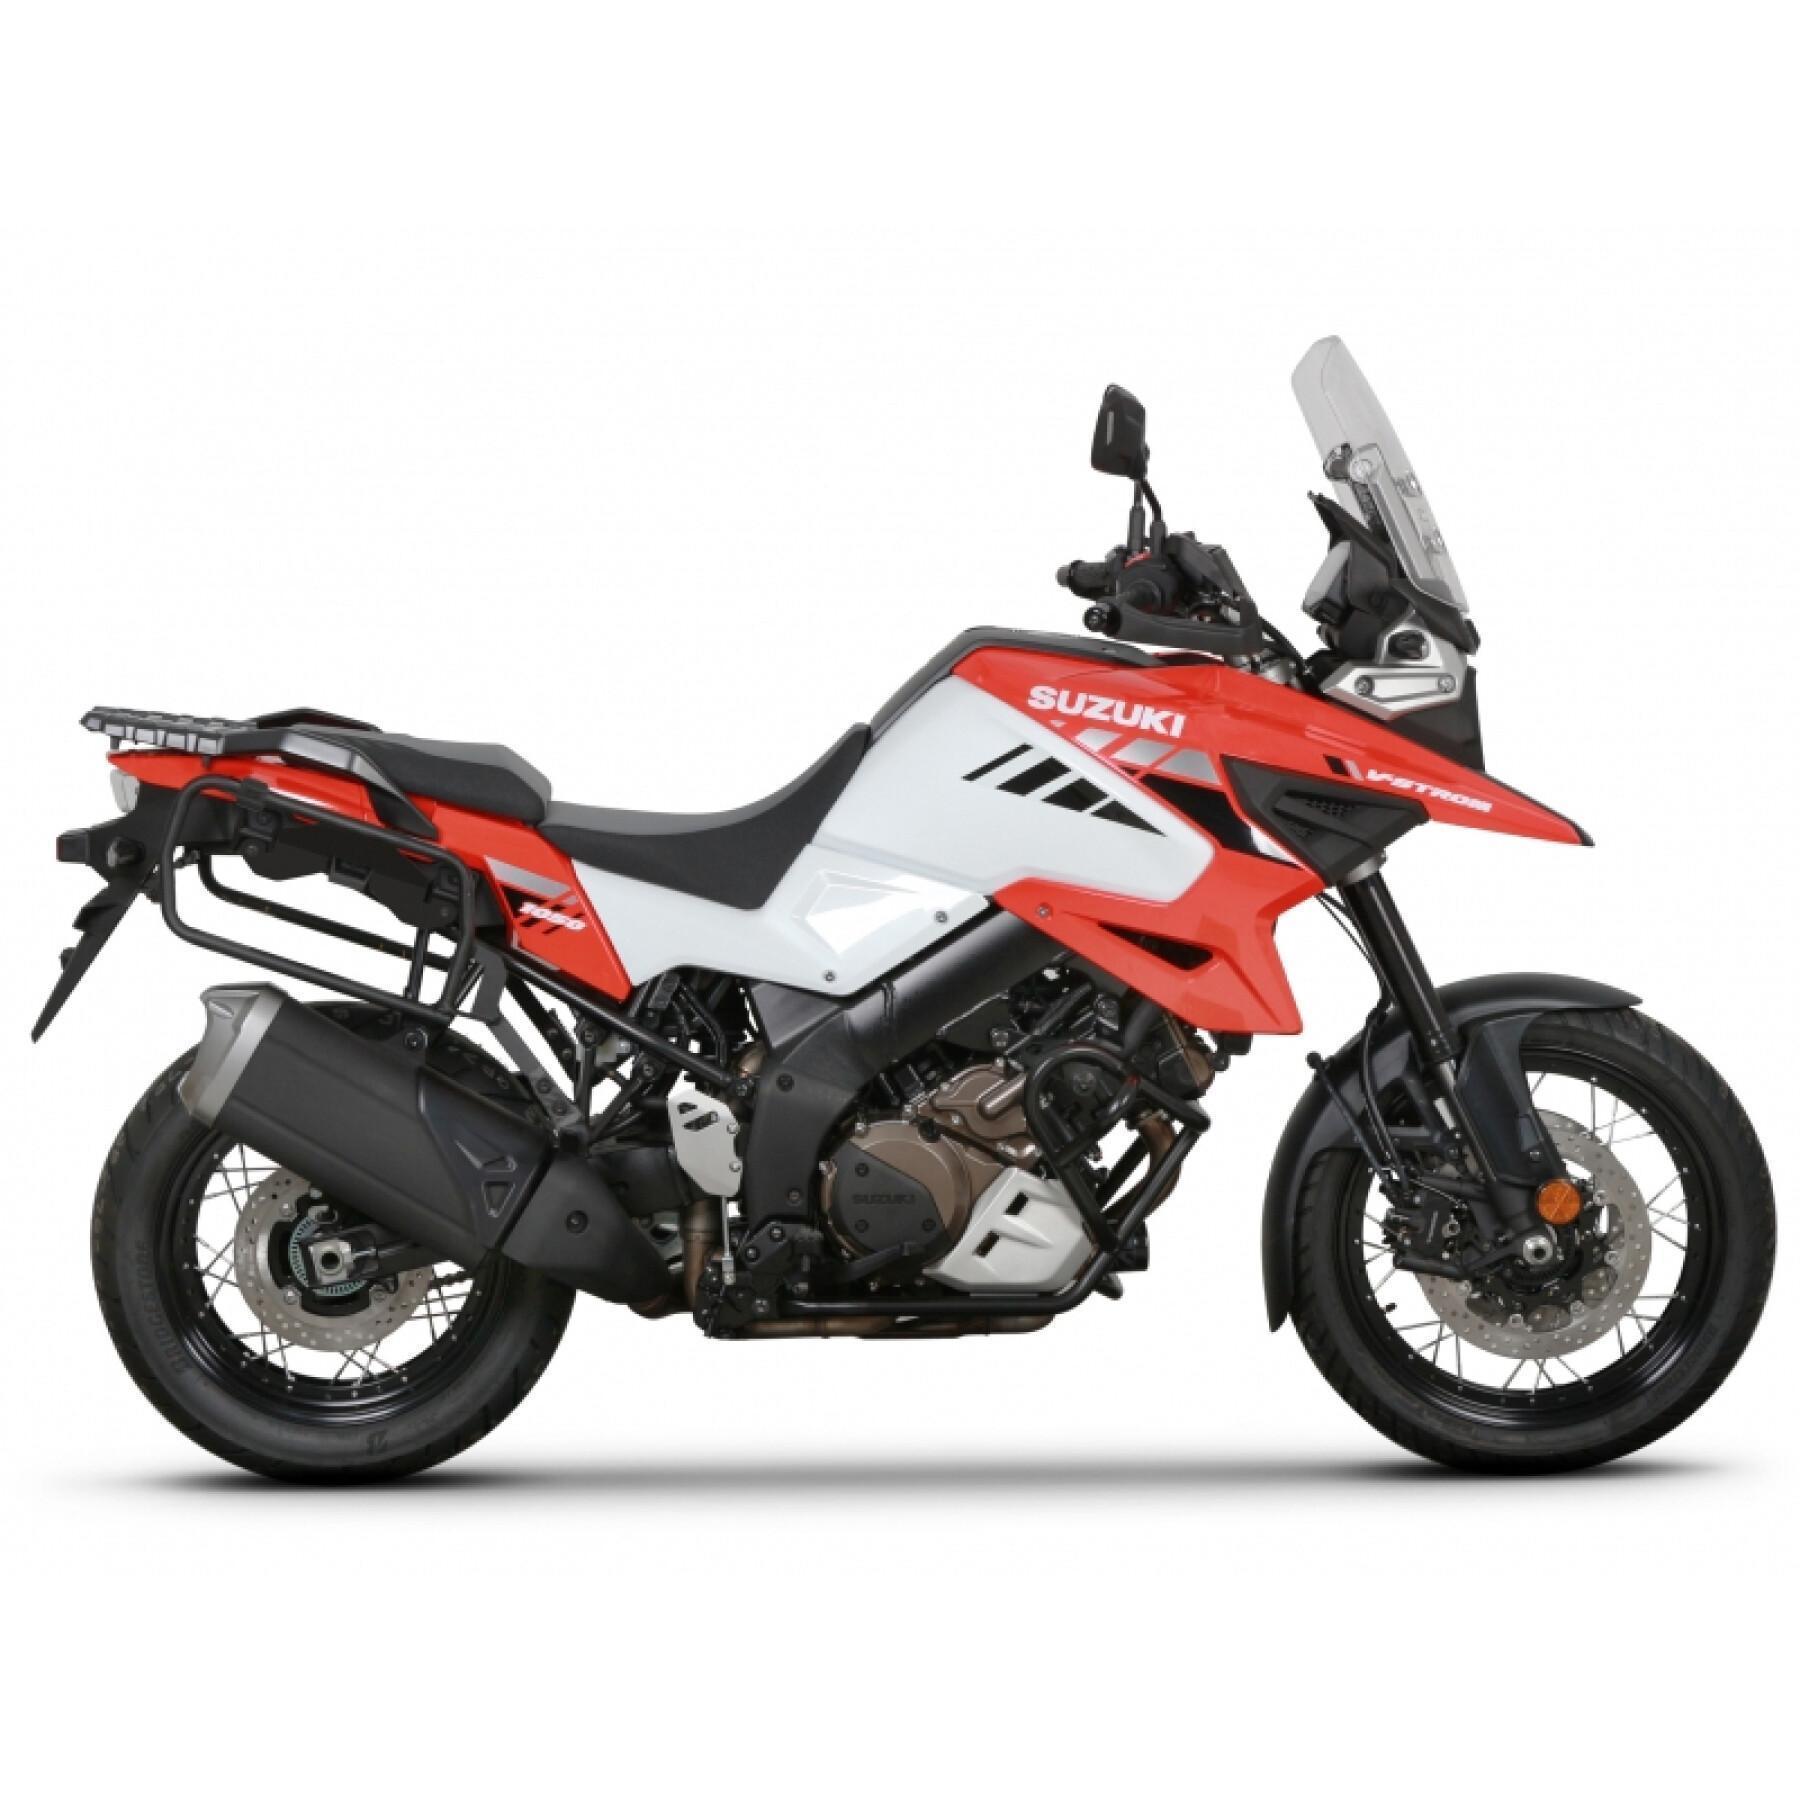 Support valises latérales moto Shad 4P System Suzuki V-Strom 1000/ V-Strom 1050 Xt 2014-2020